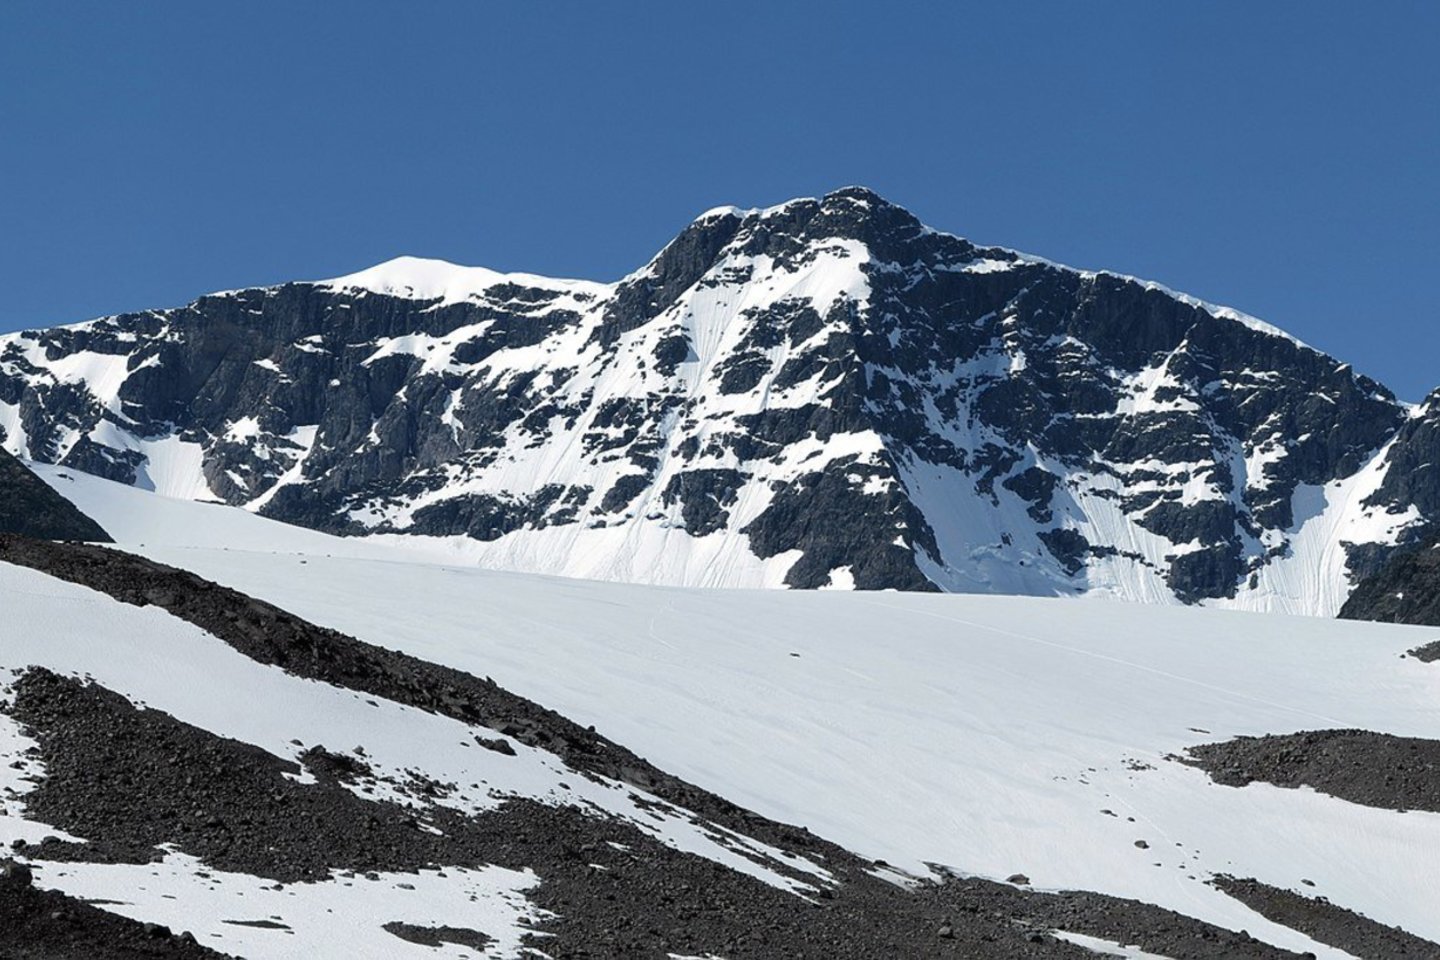 Pietinė Kebnekaisės kalno smailė – pirmą kartą per 140 stebėjimų metų dėl neregėtos kaitros taip aptirpo, kad tapo žemesnė už savo „jaunesniąją seserį“ – šiaurinę smailę.<br> Wikipedia.org nuotr.